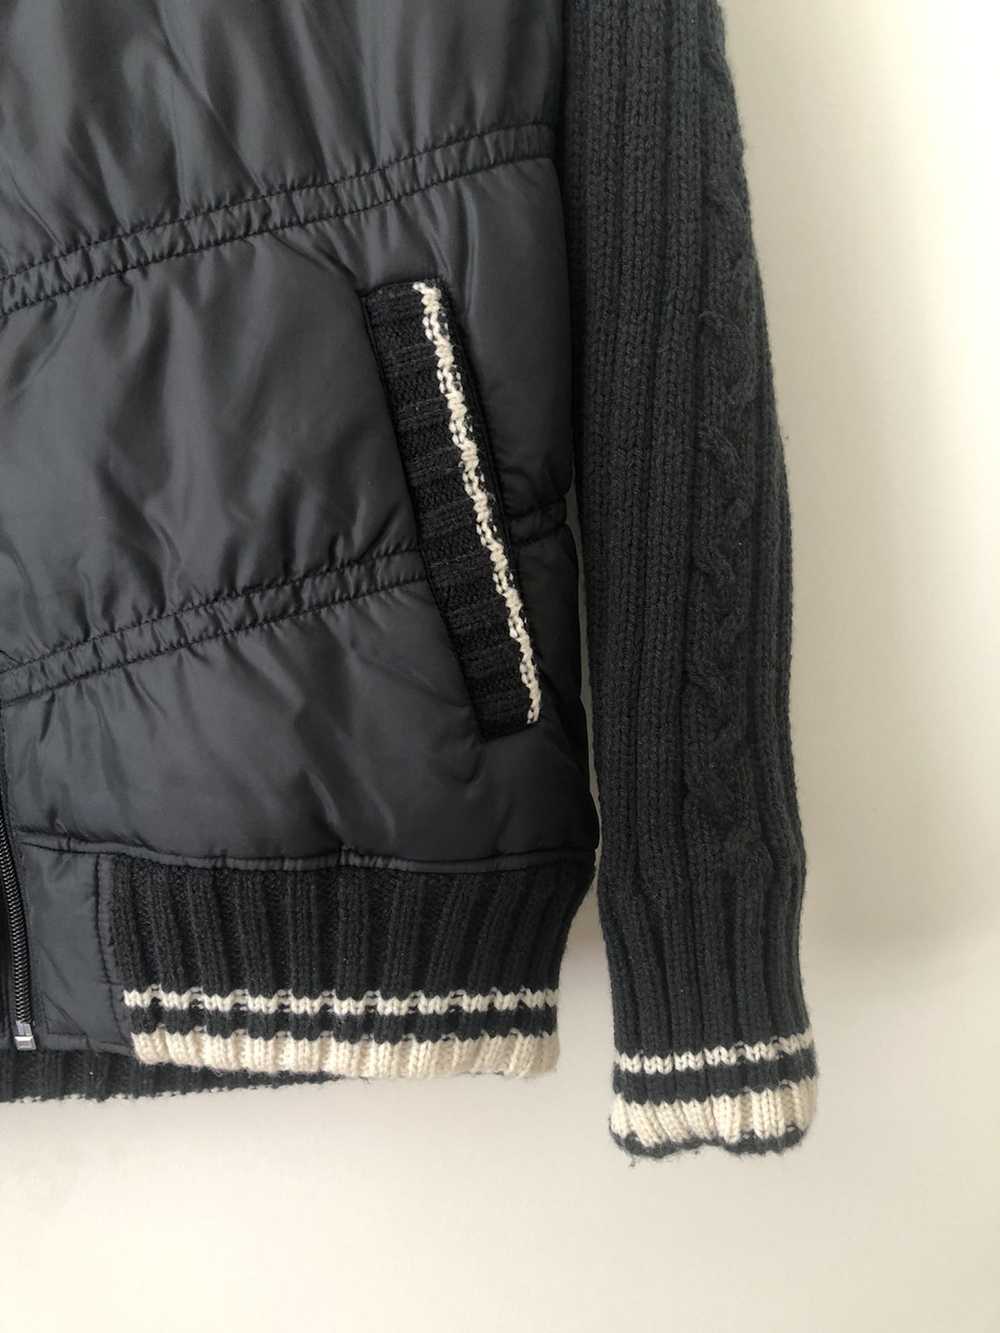 Converse Knit puffy light jacket womens large size - image 3